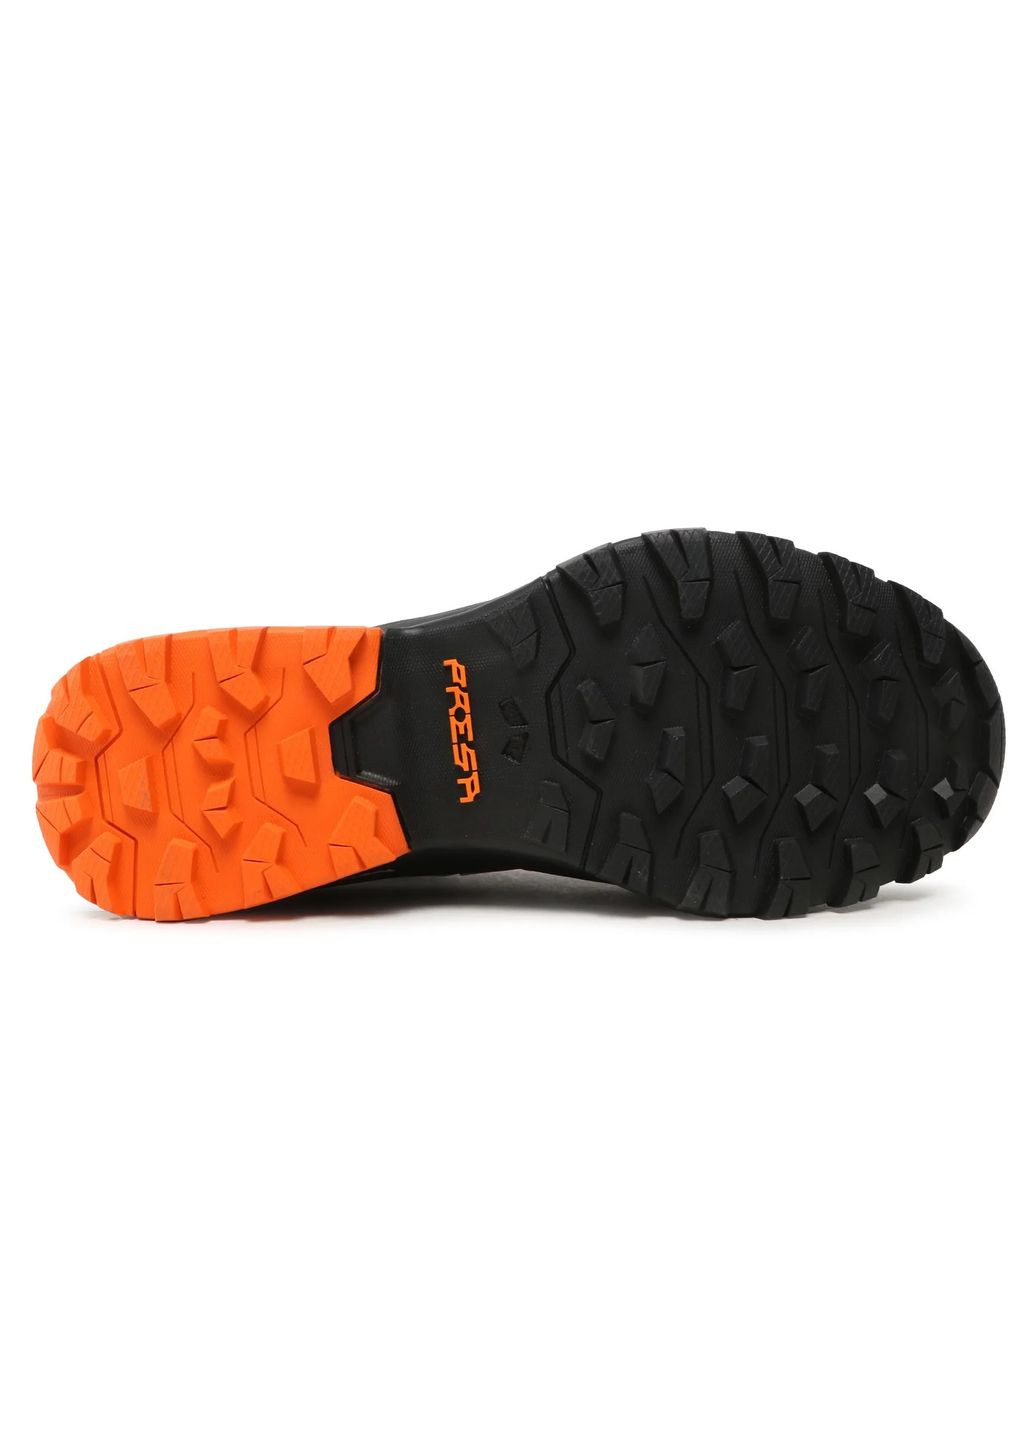 Цветные кроссовки мужские ribelle run xt черный-оранжевый Scarpa